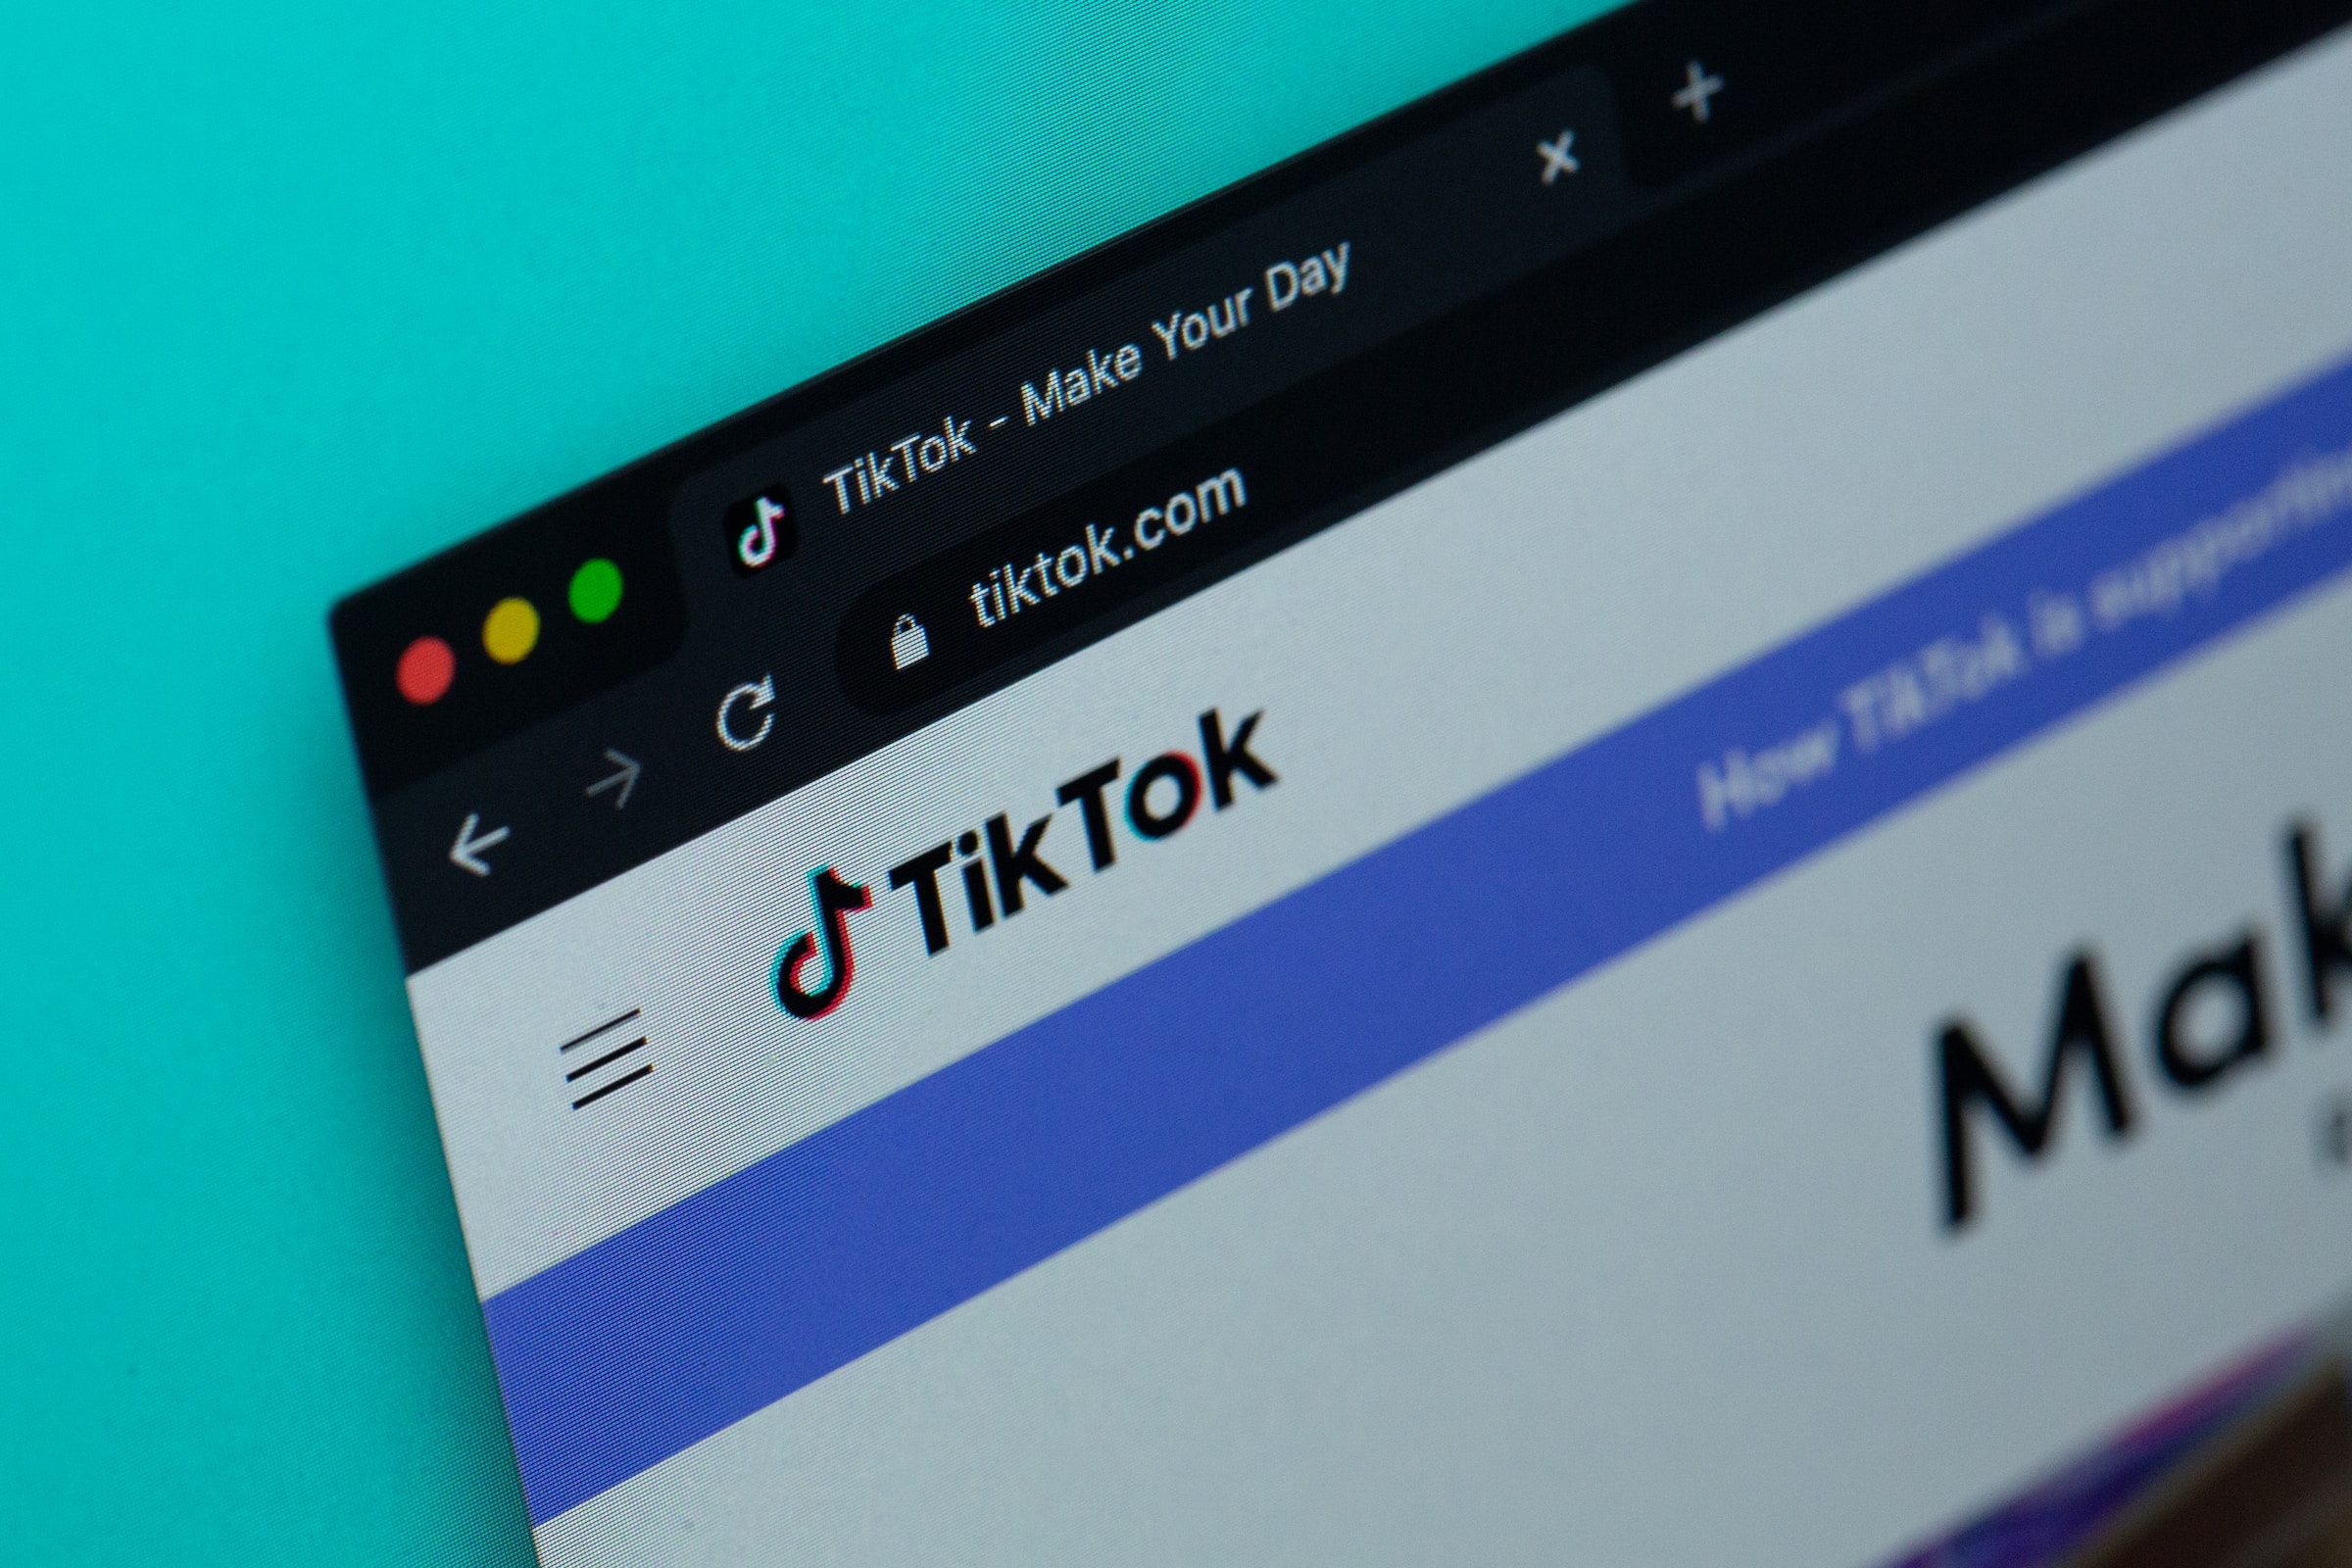 TikTok homepage